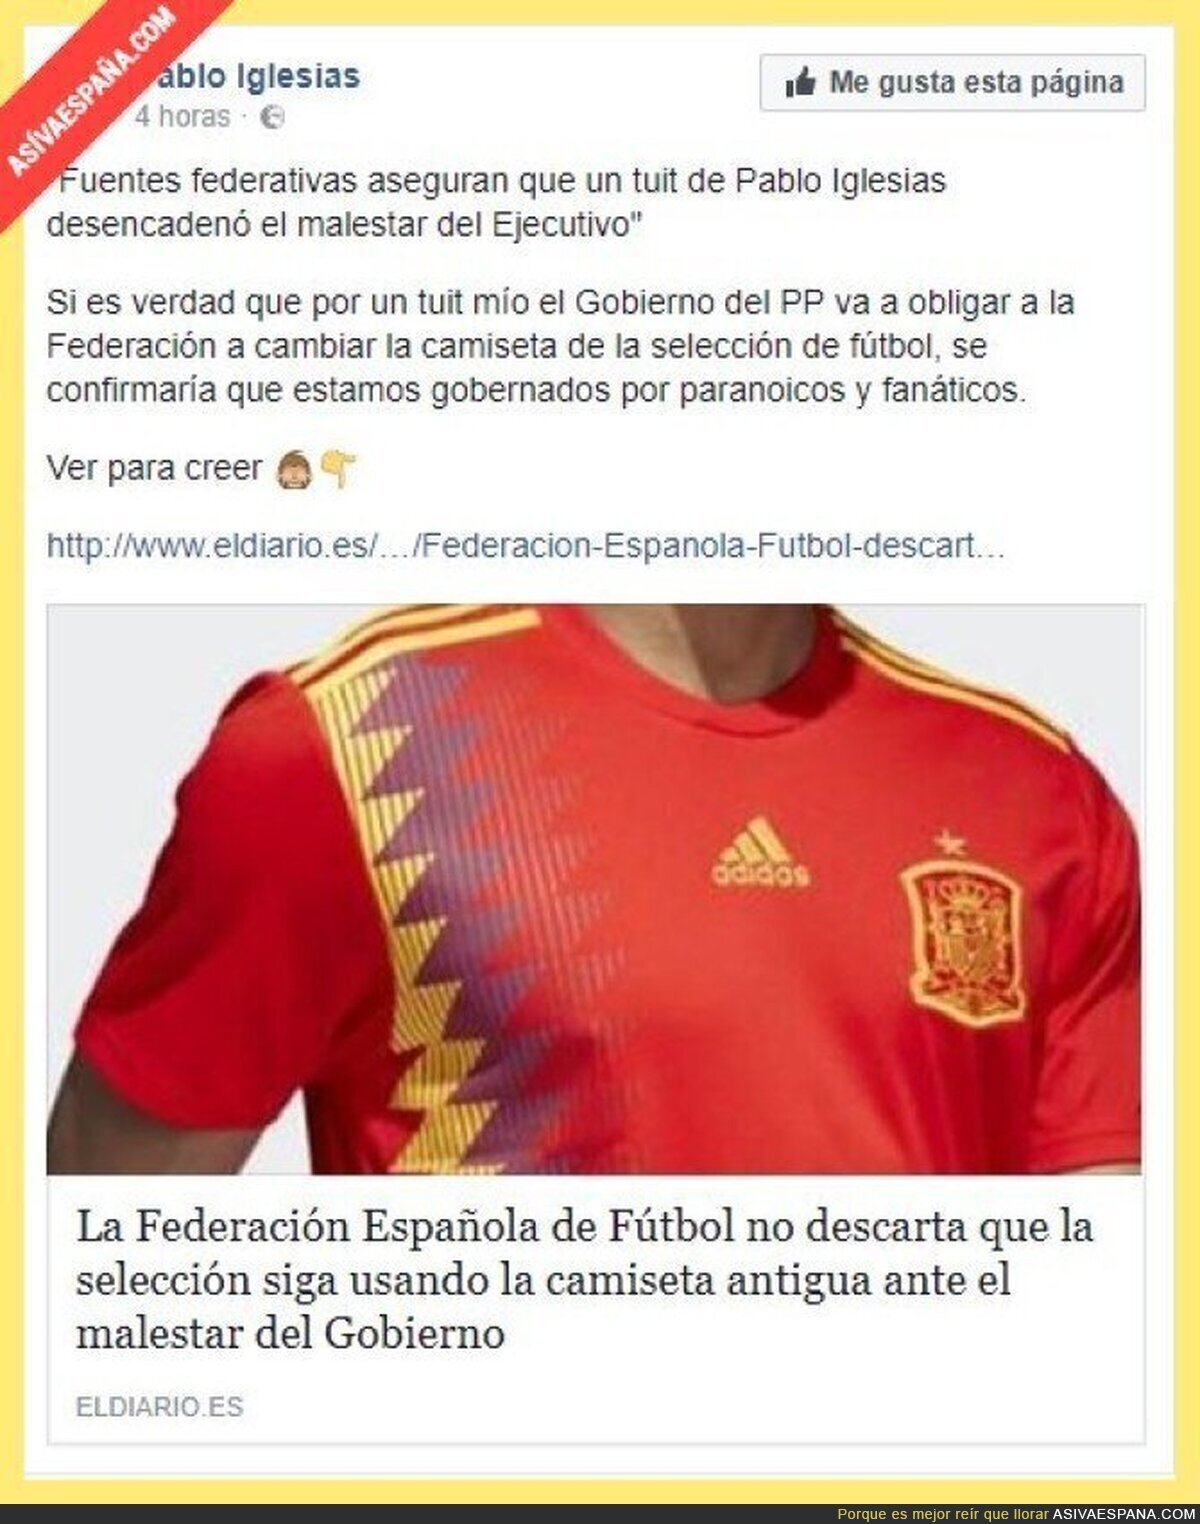 La dictadura española no iba a permitir que se mancille su adorado fútbol